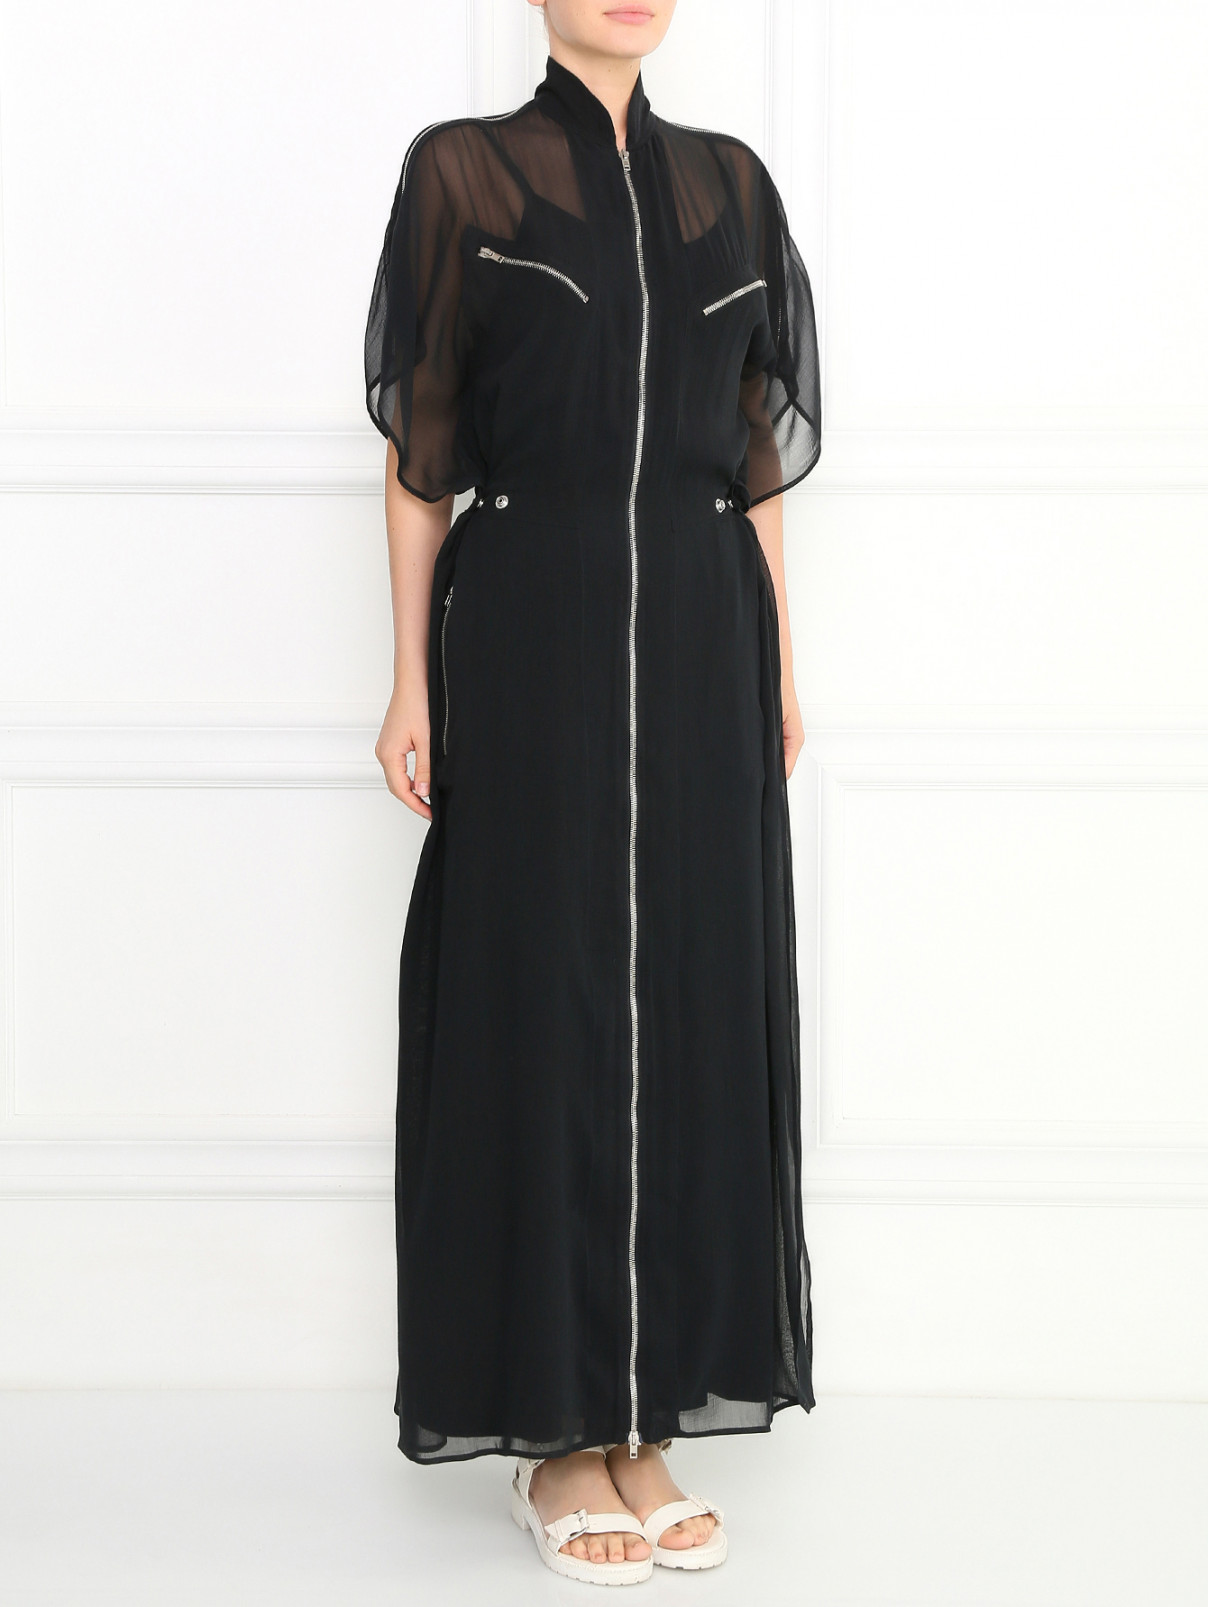 Платье-макси из хлопка и шелка декорированное молниями Jean Paul Gaultier  –  Модель Общий вид  – Цвет:  Черный